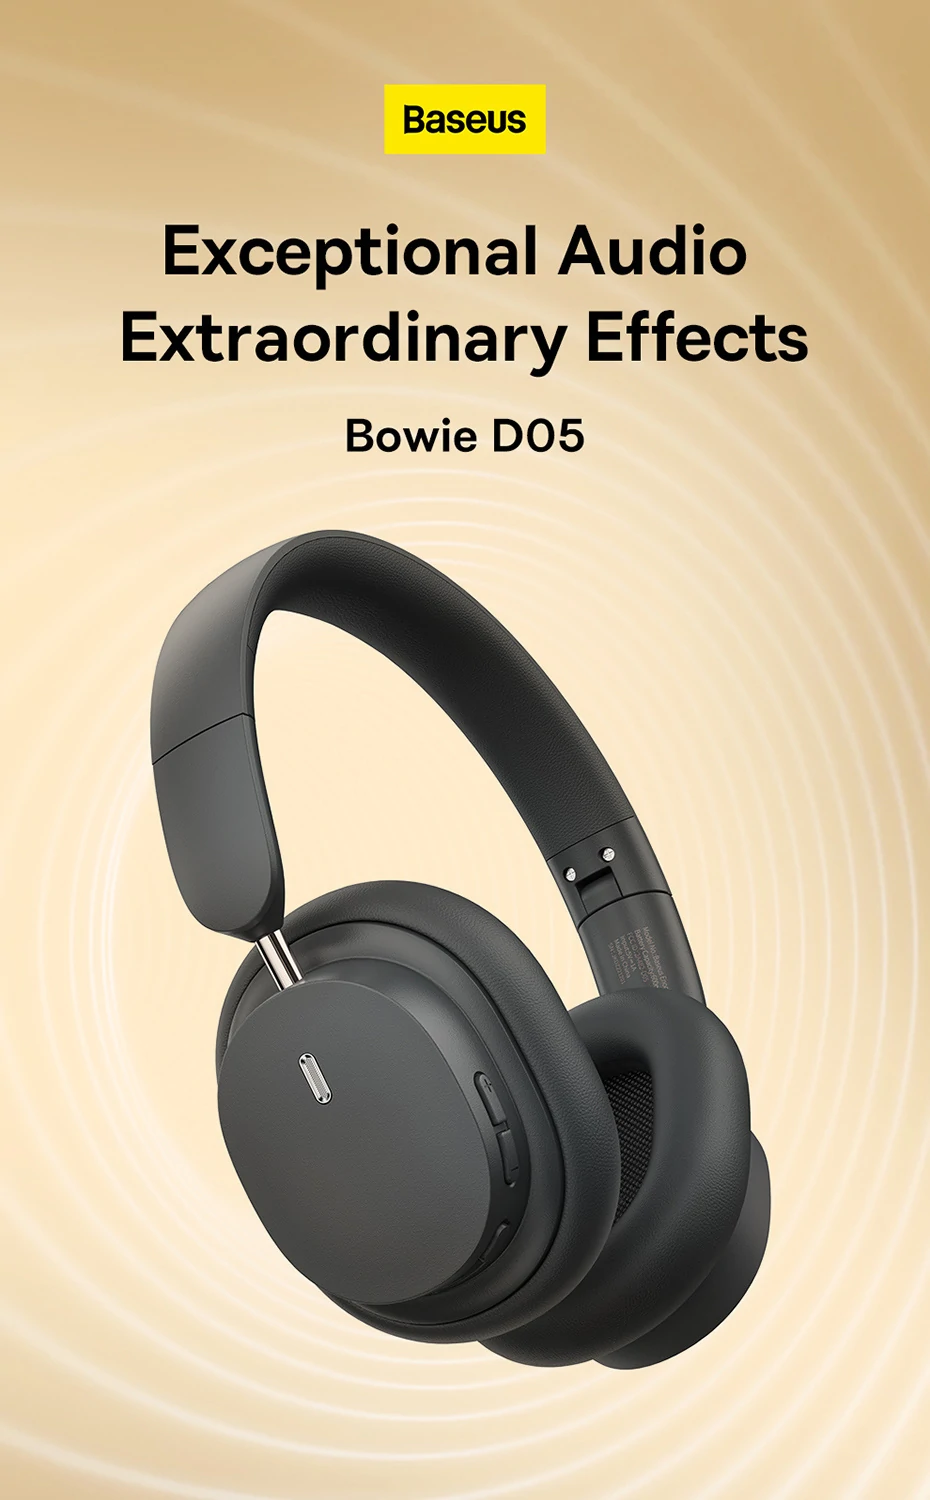 Baseus Bowie D05 Bluetooth-hovedtelefoner med speciel 3D-funktion